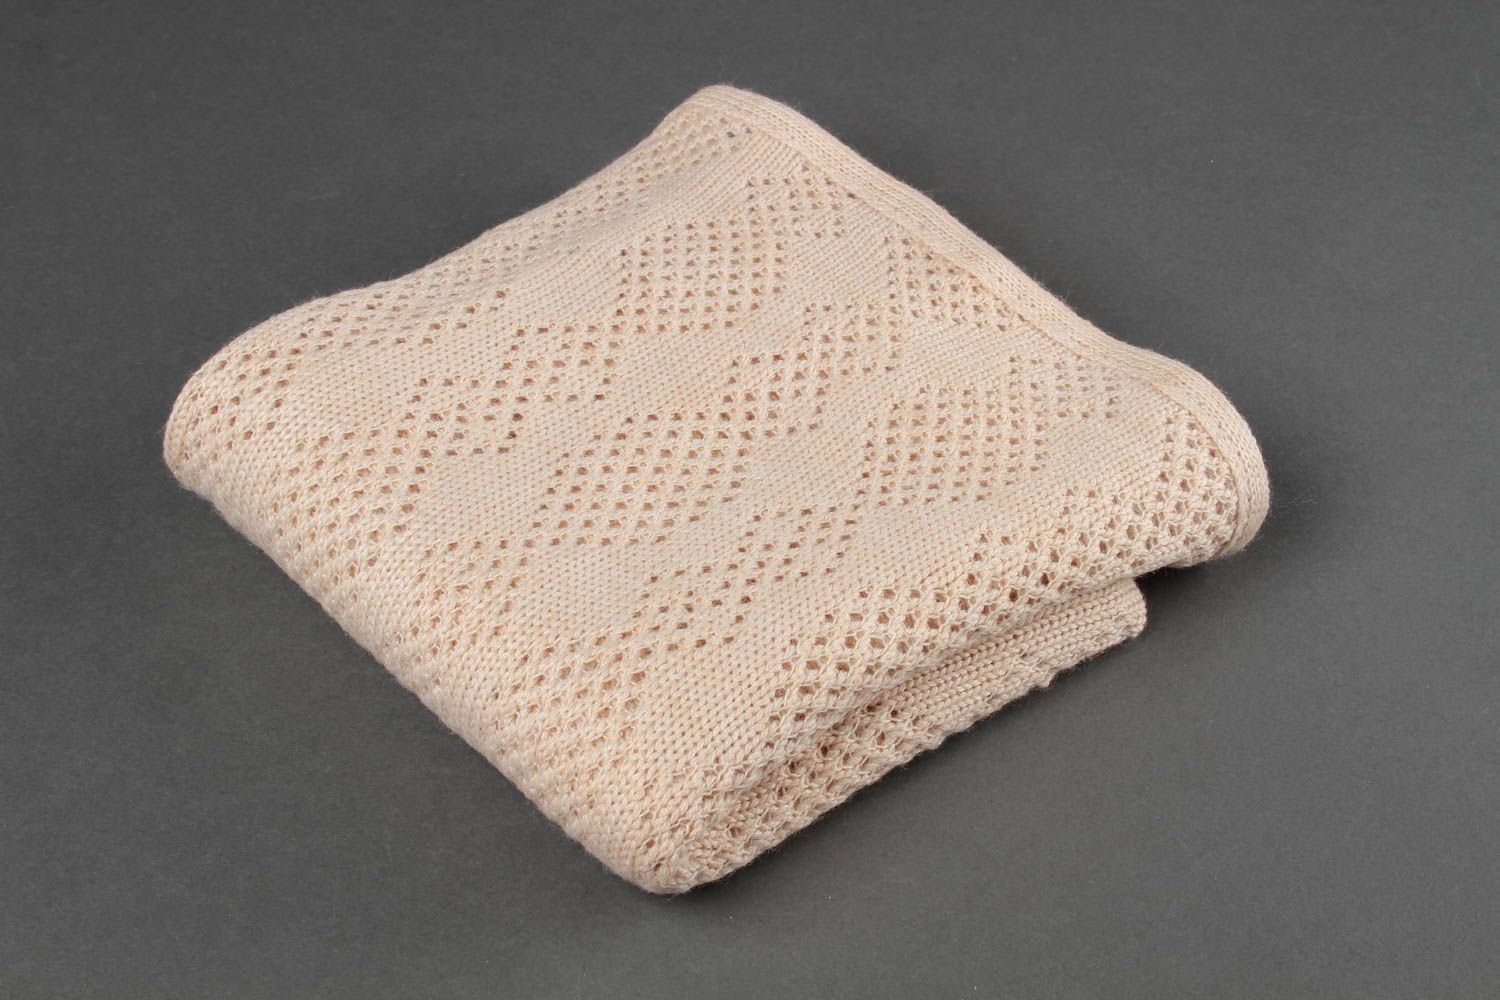 Handmade blanket baby blanket knitted blanket crocheted blanket gift ideas photo 2